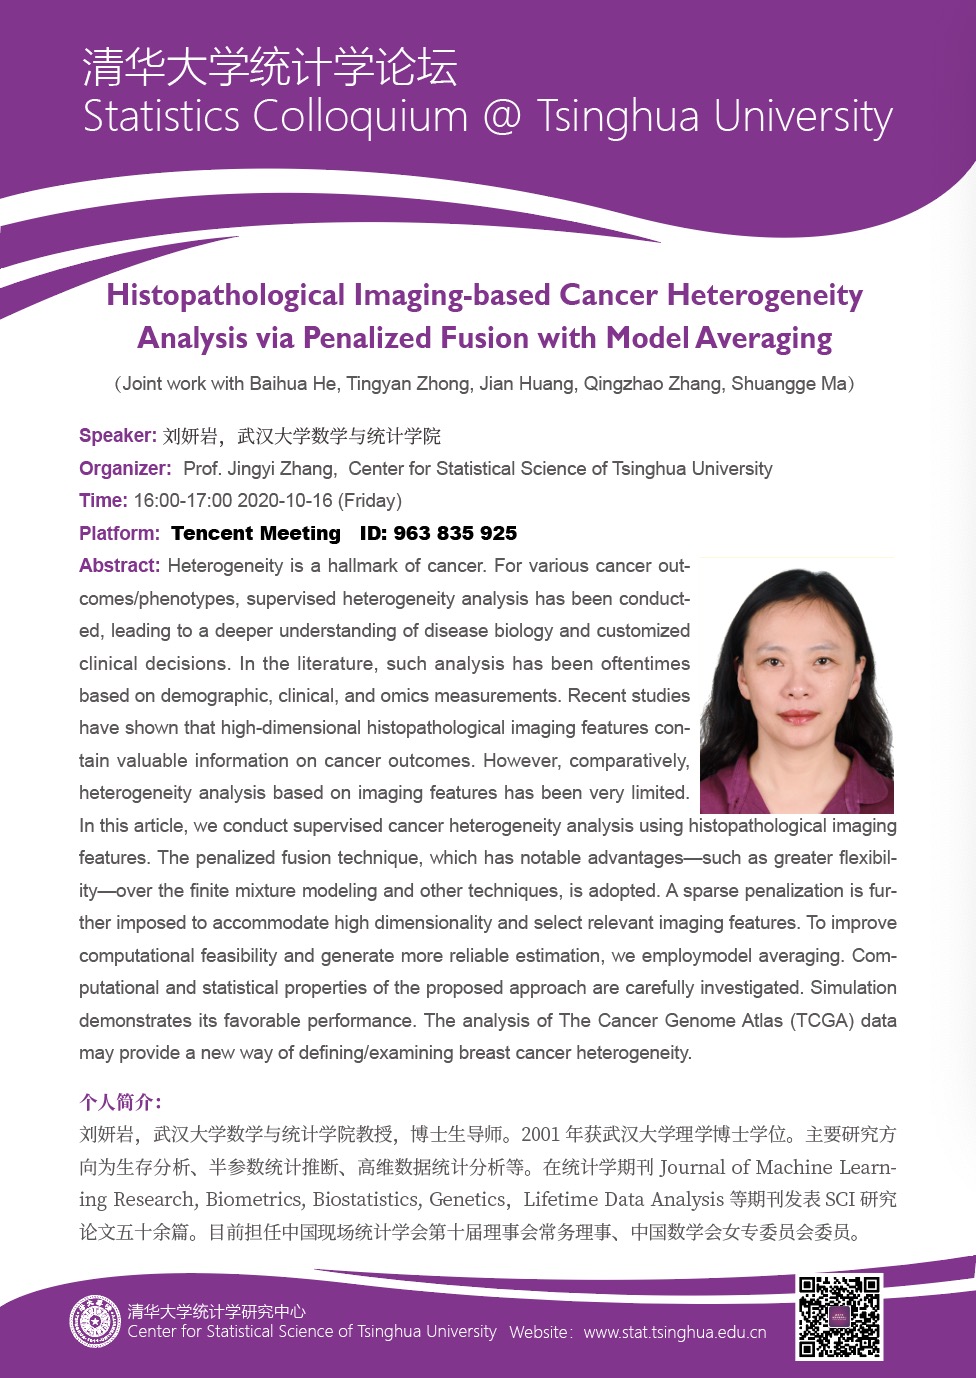 【统计学论坛】 Histopathological Imaging-based Cancer Heterogeneity Analysis via Penalized Fusion with Model Averaging